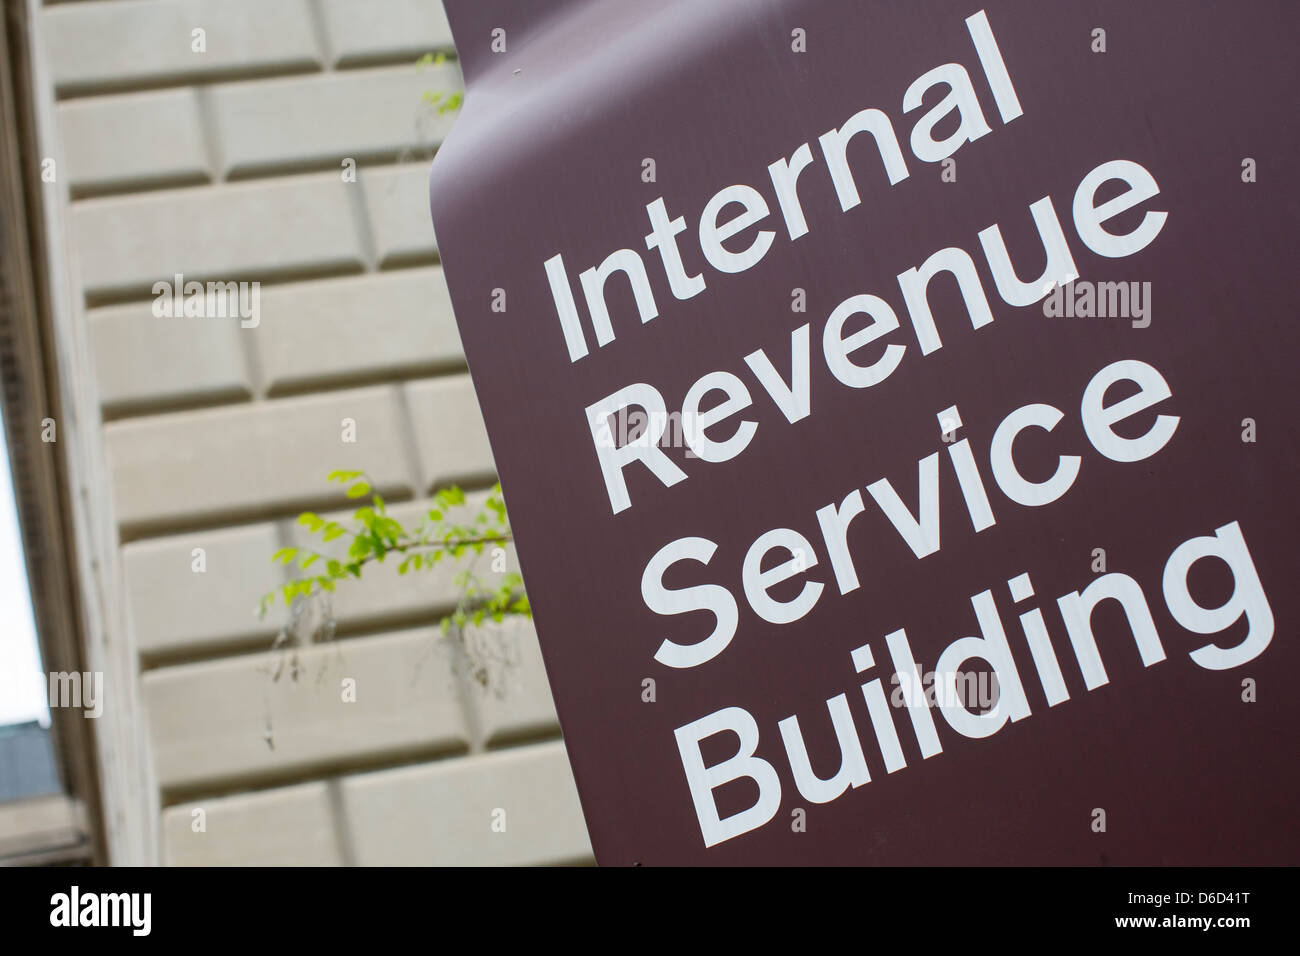 Le siège de l'Internal Revenue Service dans le centre-ville de Washington, DC. Banque D'Images